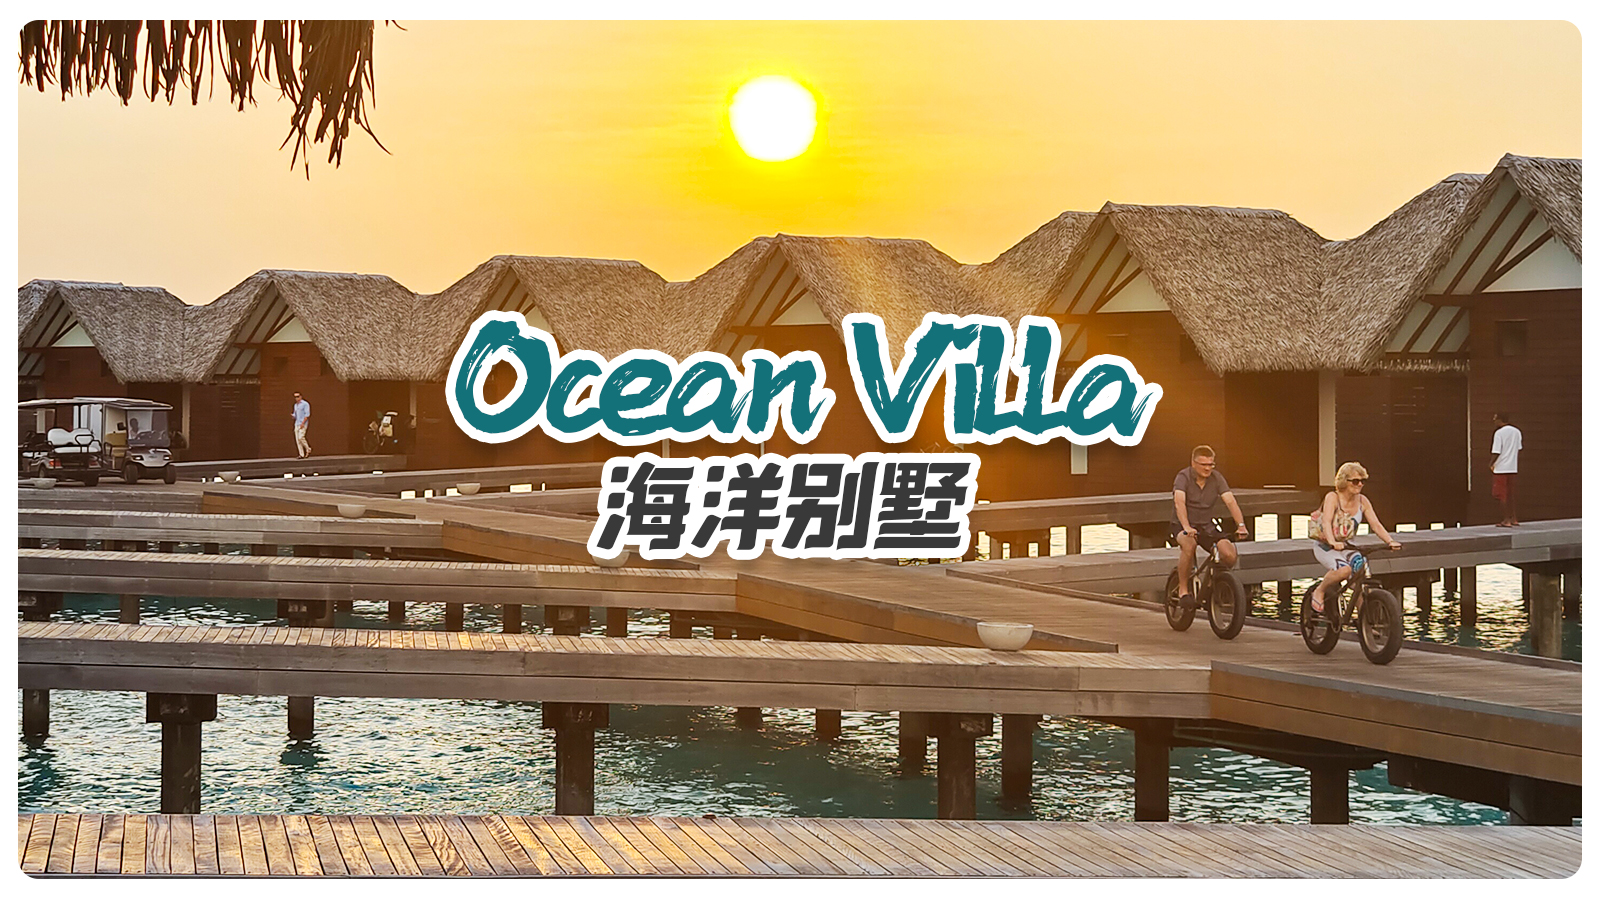  Ocean villa